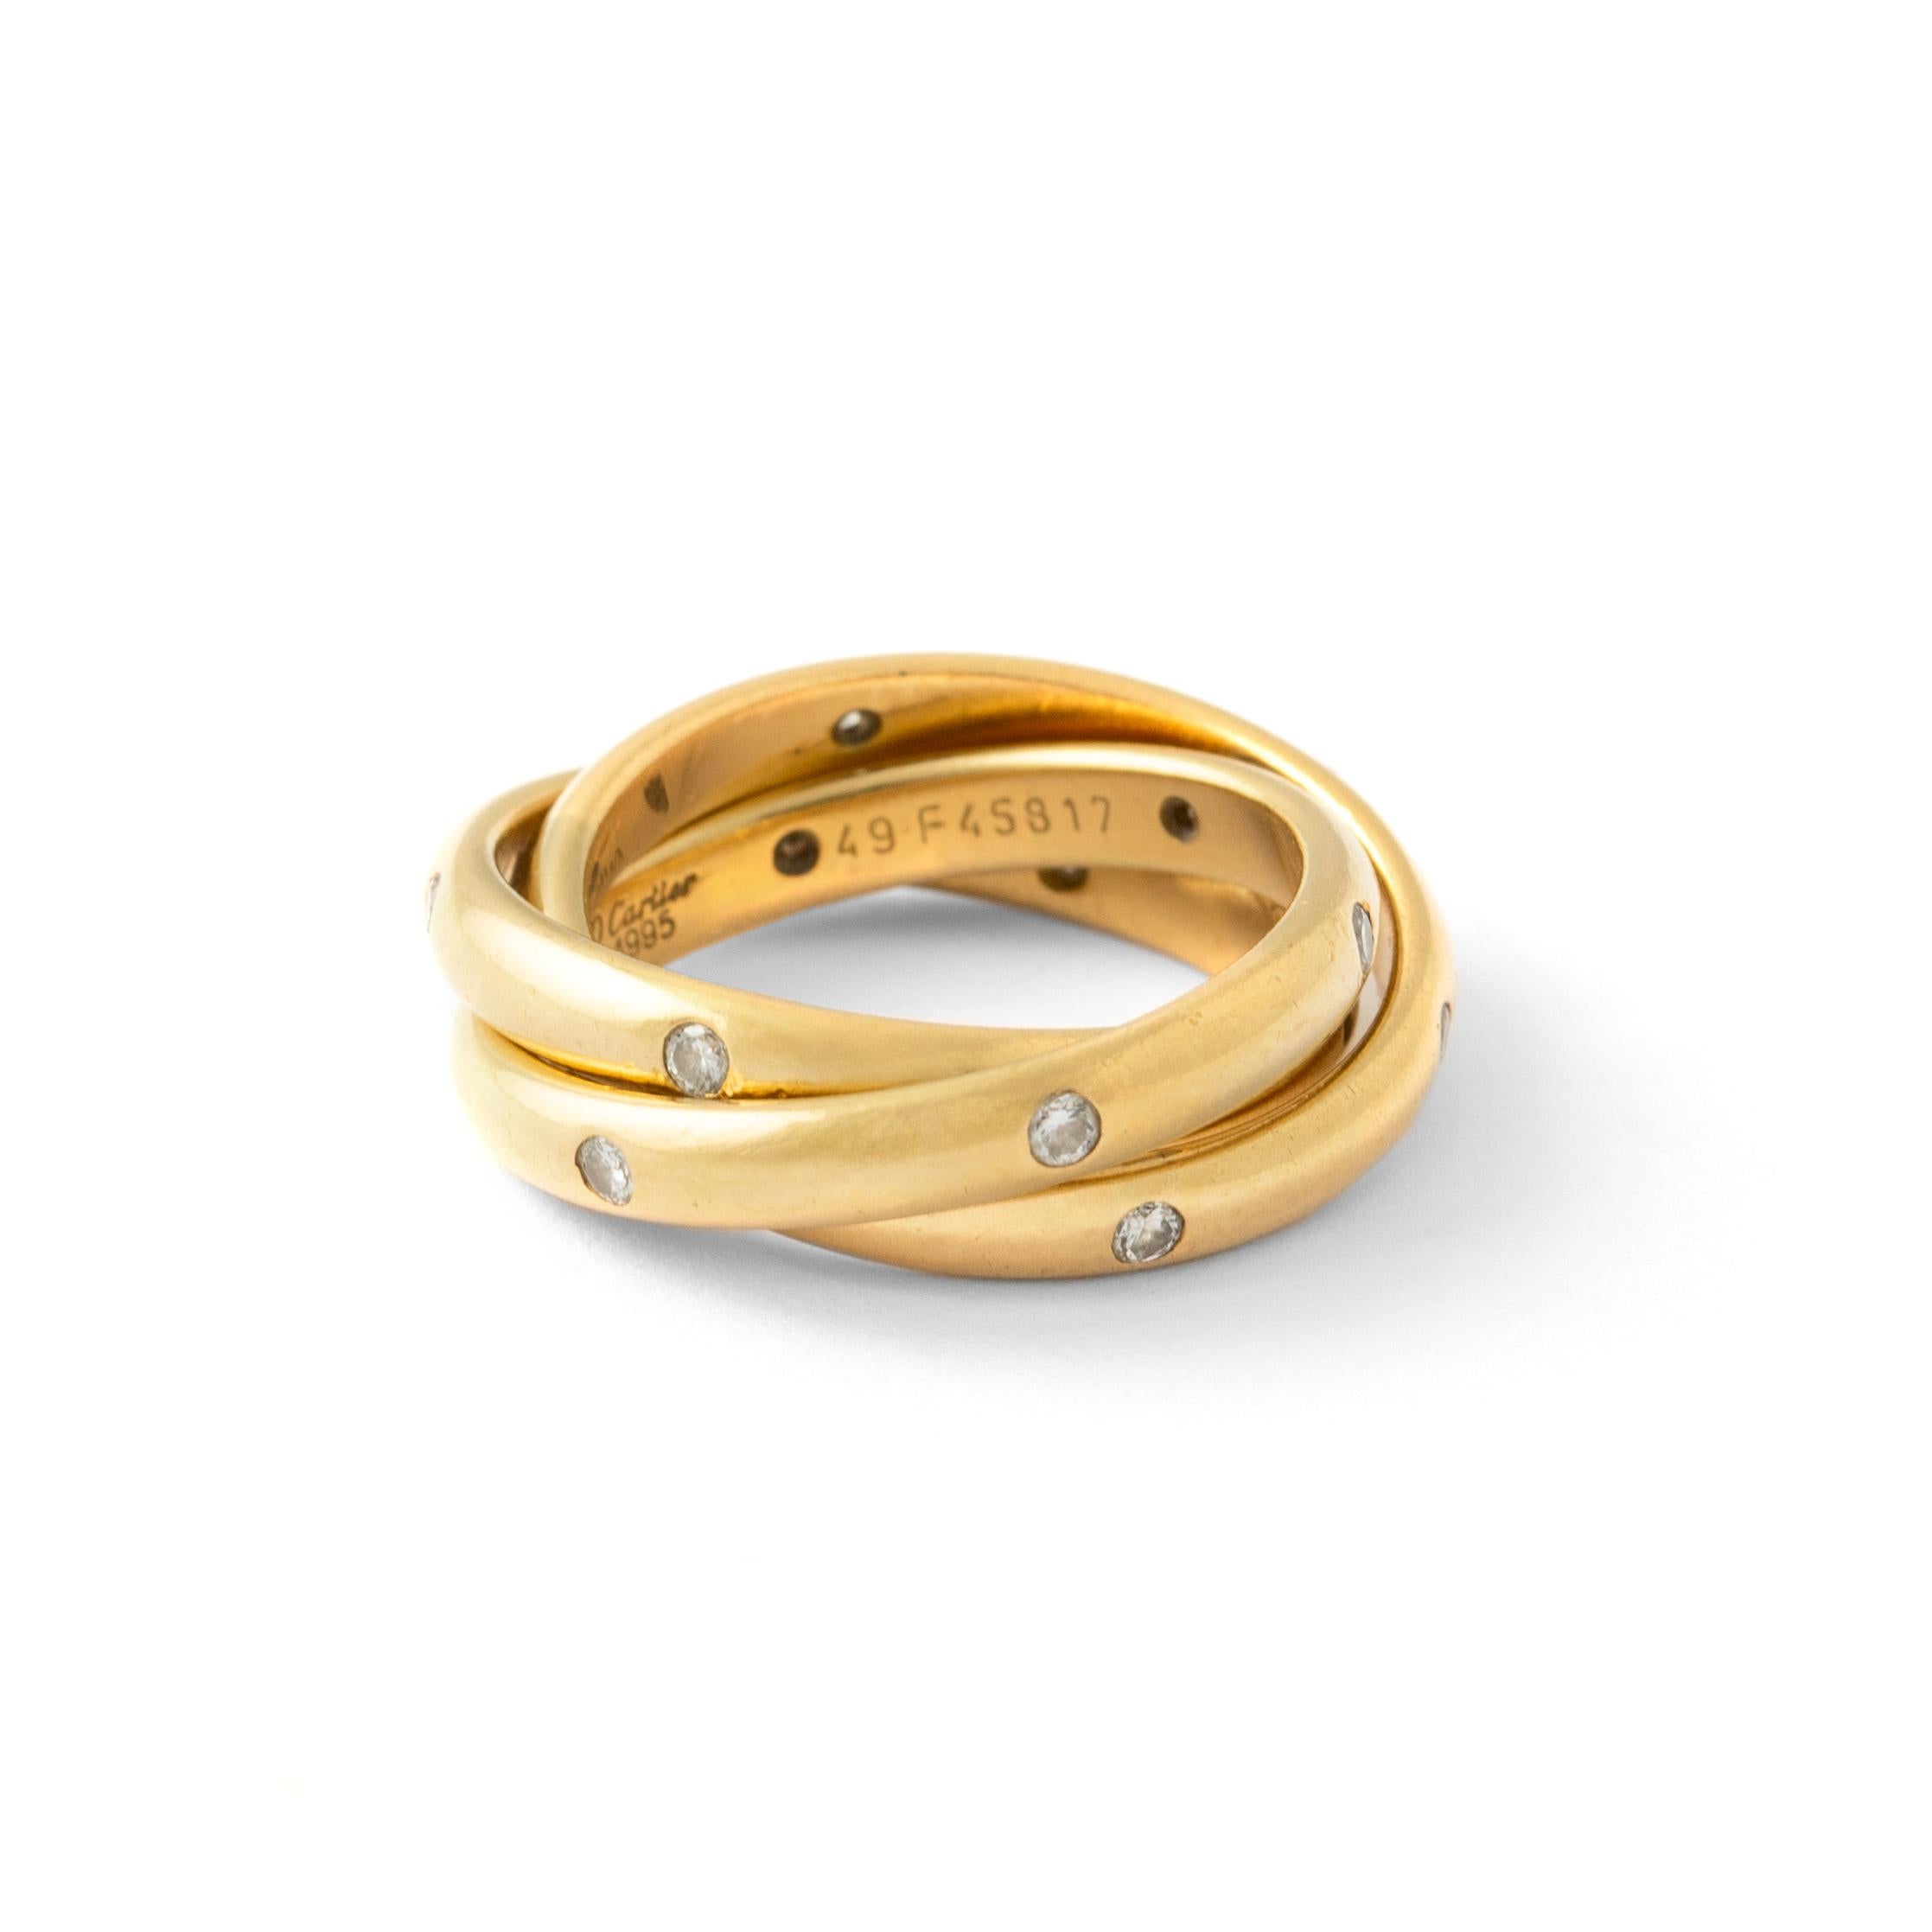 Cartier Constellation Diamant Gelbgold Trinity Band Ring

Dieser fabelhafte Ring aus der Collection'S Constellation Trinity von Cartier besteht aus drei miteinander verbundenen 4,0-mm-Bändern aus 18 Karat Gelbgold und ist mit runden Brillanten D-F